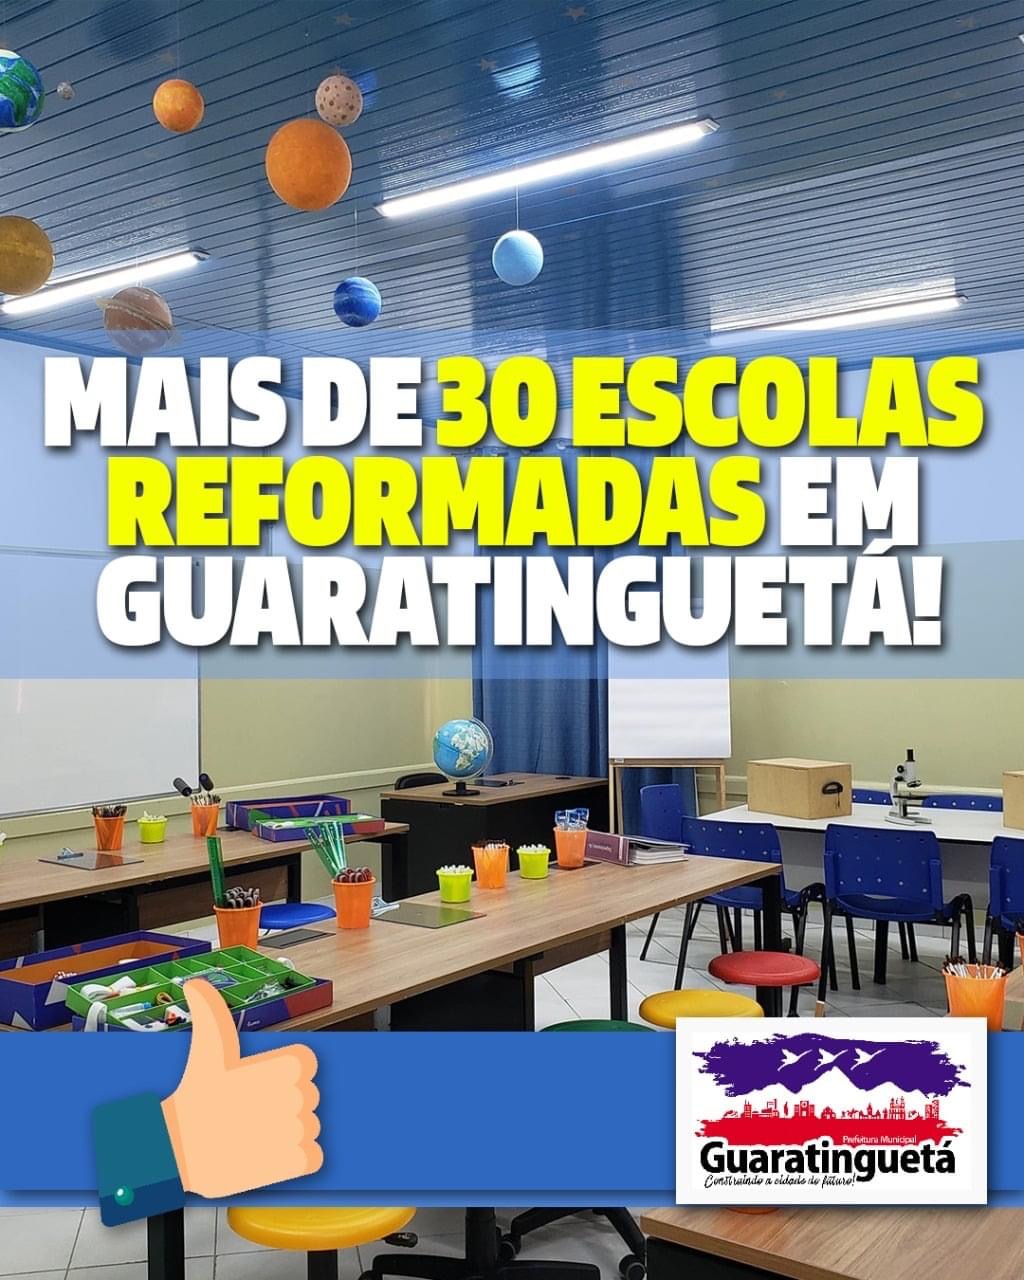 Nos últimos quatro anos, em Guaratinguetá, mais de 30 escolas foram reformadas